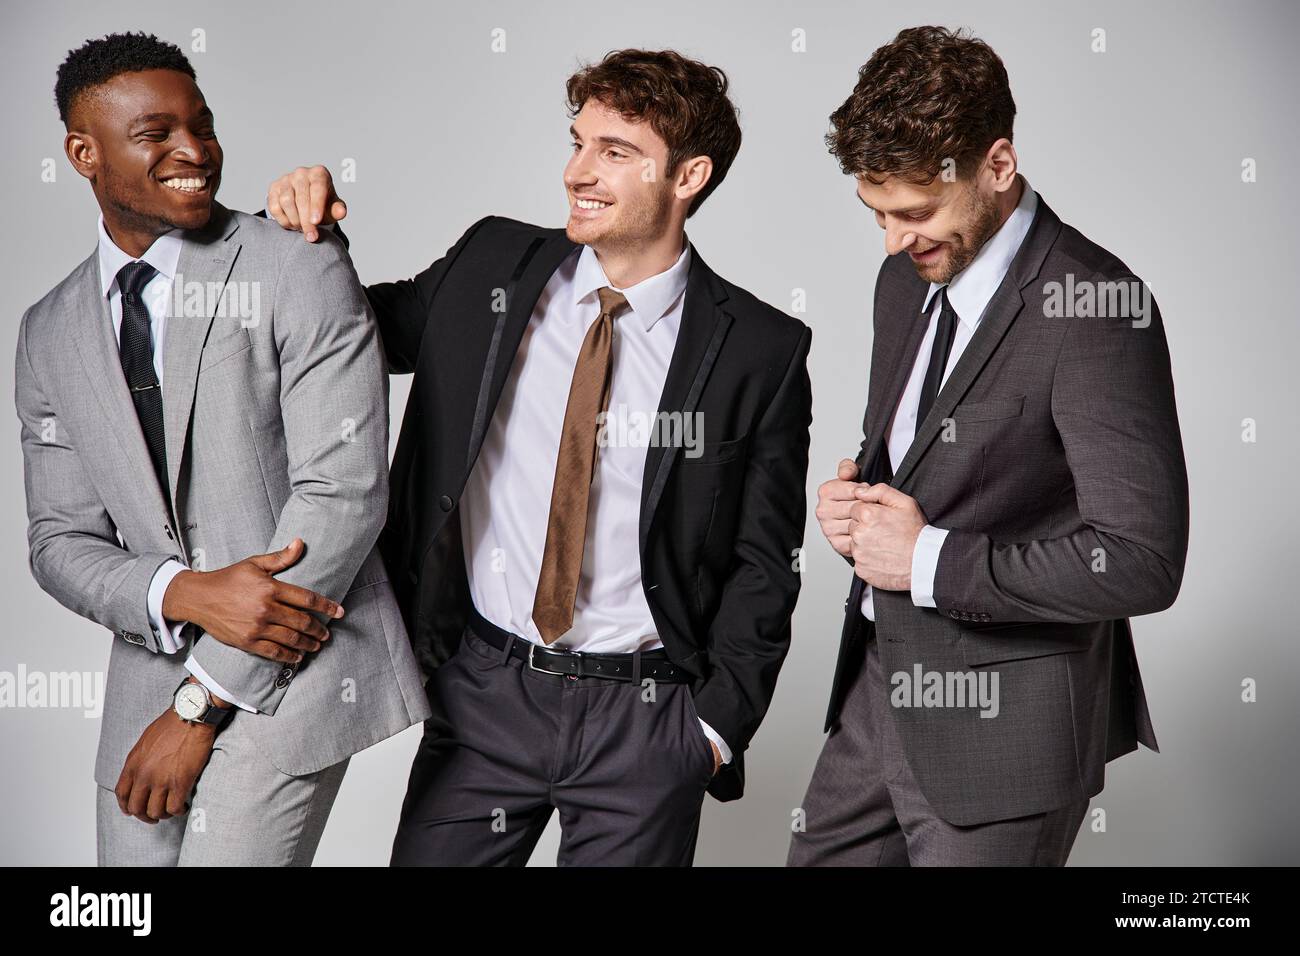 Gut aussehende, fröhliche, interrassische männliche Models in schicken Anzügen, die aufrichtig vor grauem Hintergrund lächeln Stockfoto